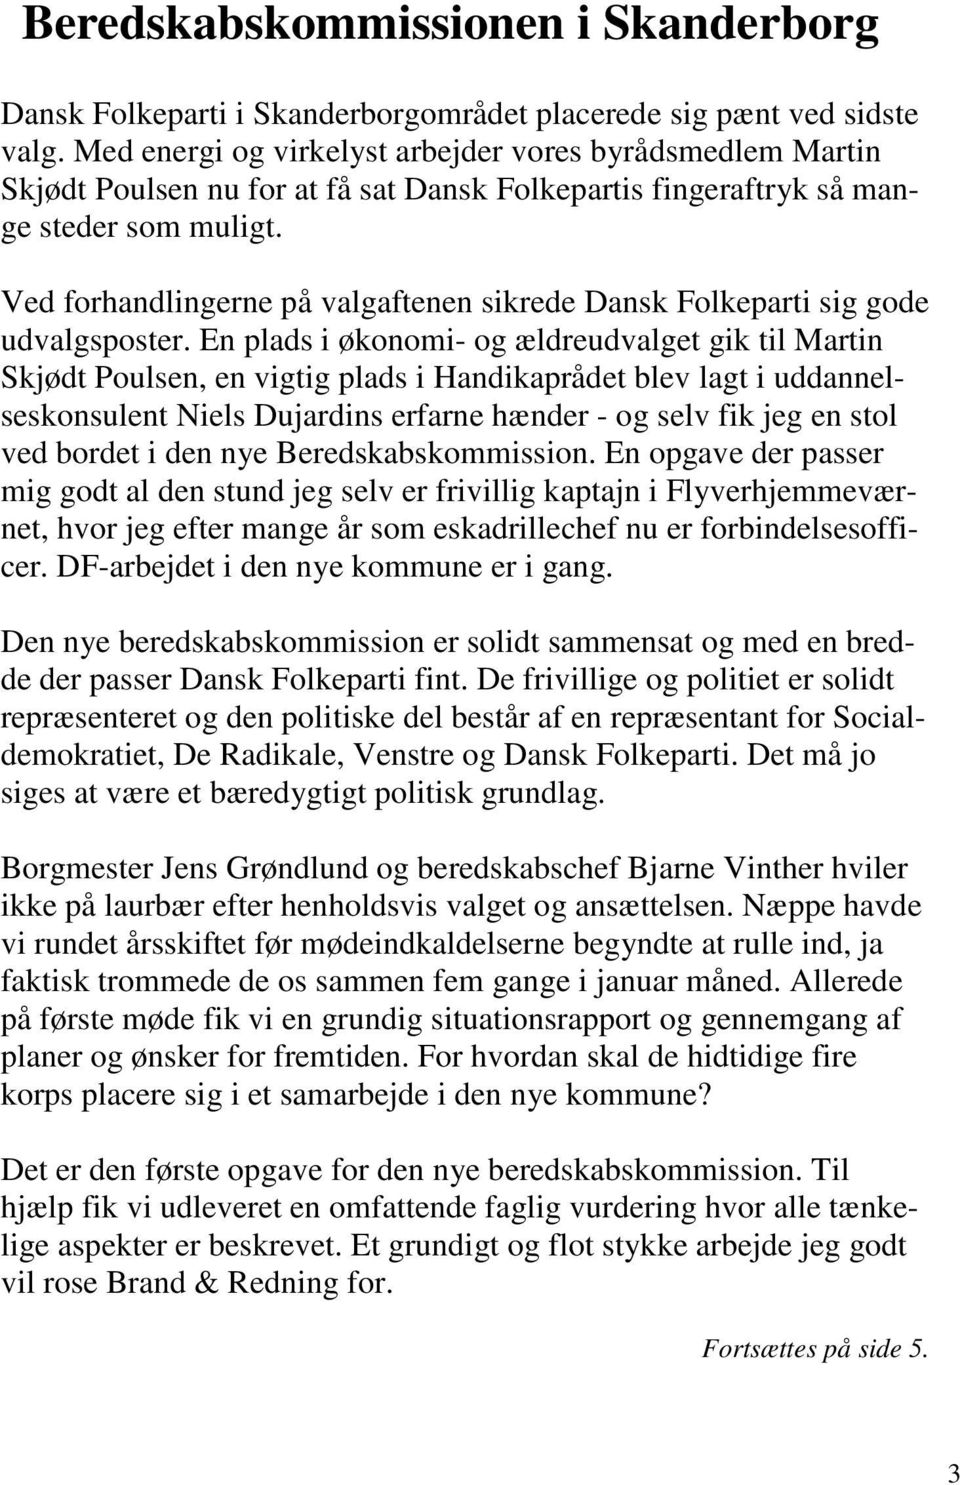 Ved forhandlingerne på valgaftenen sikrede Dansk Folkeparti sig gode udvalgsposter.